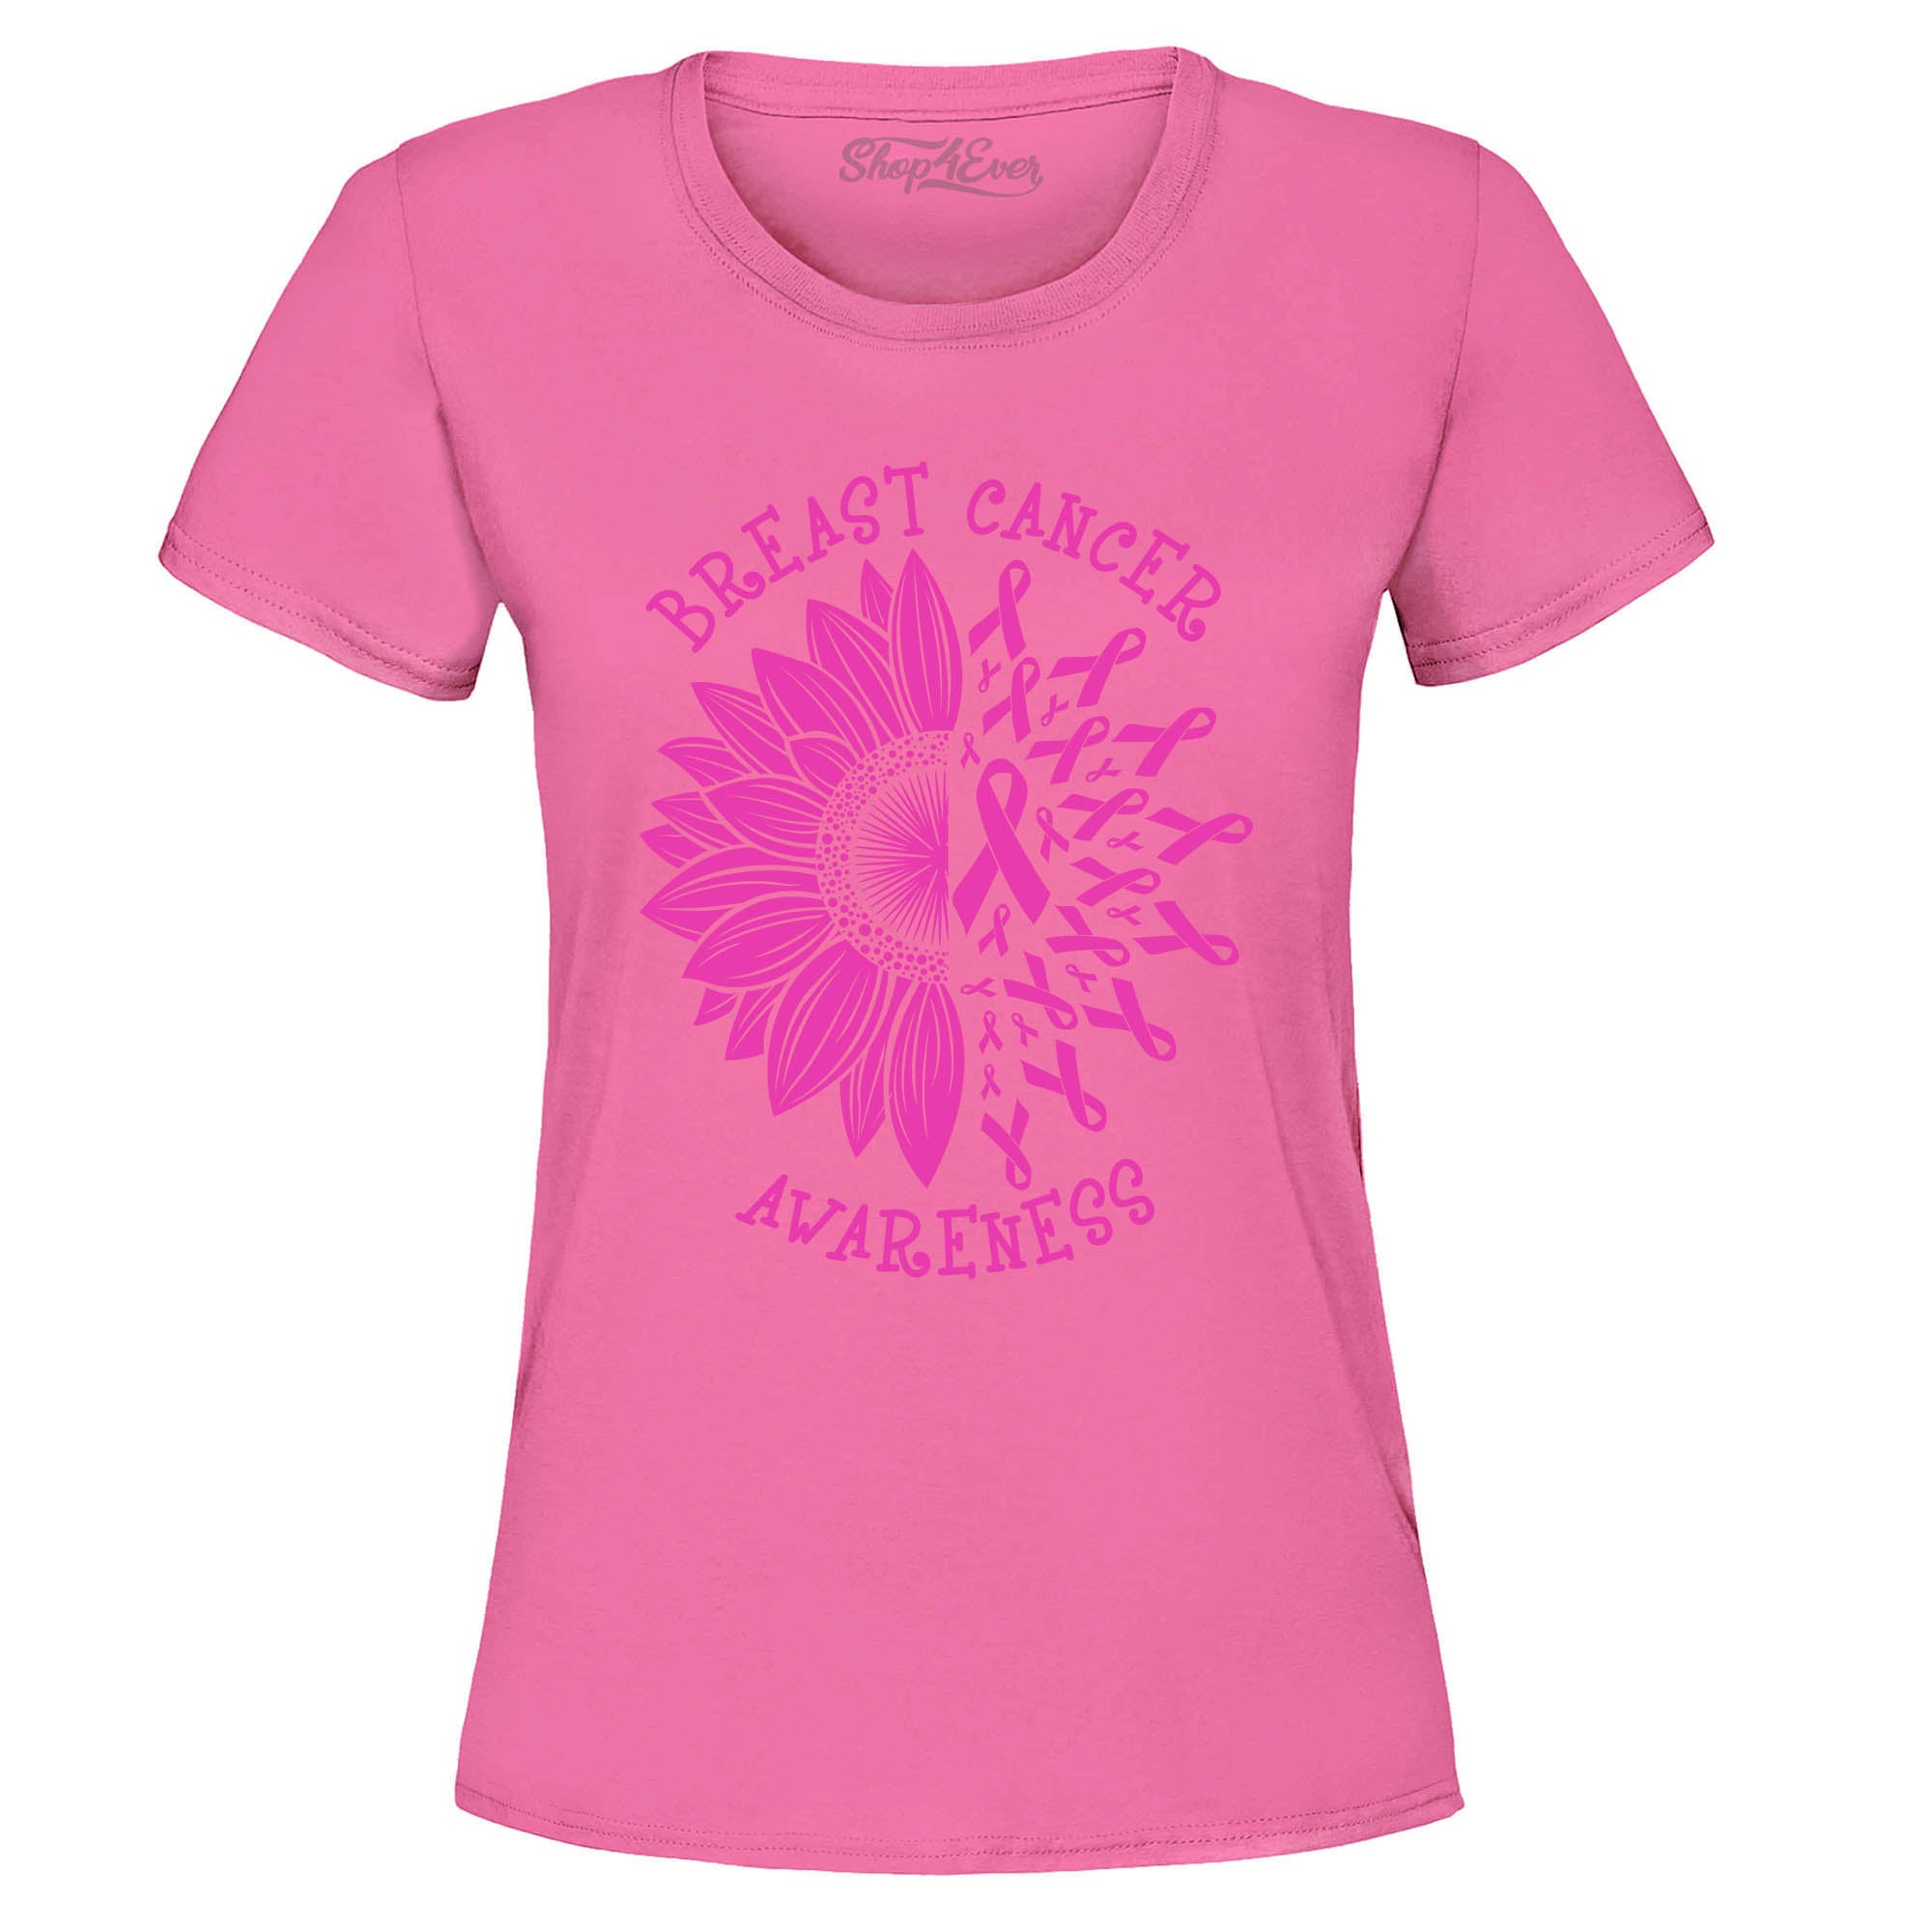 Sunflower Pink Ribbon Breast Cancer Awareness Women's T-Shirt